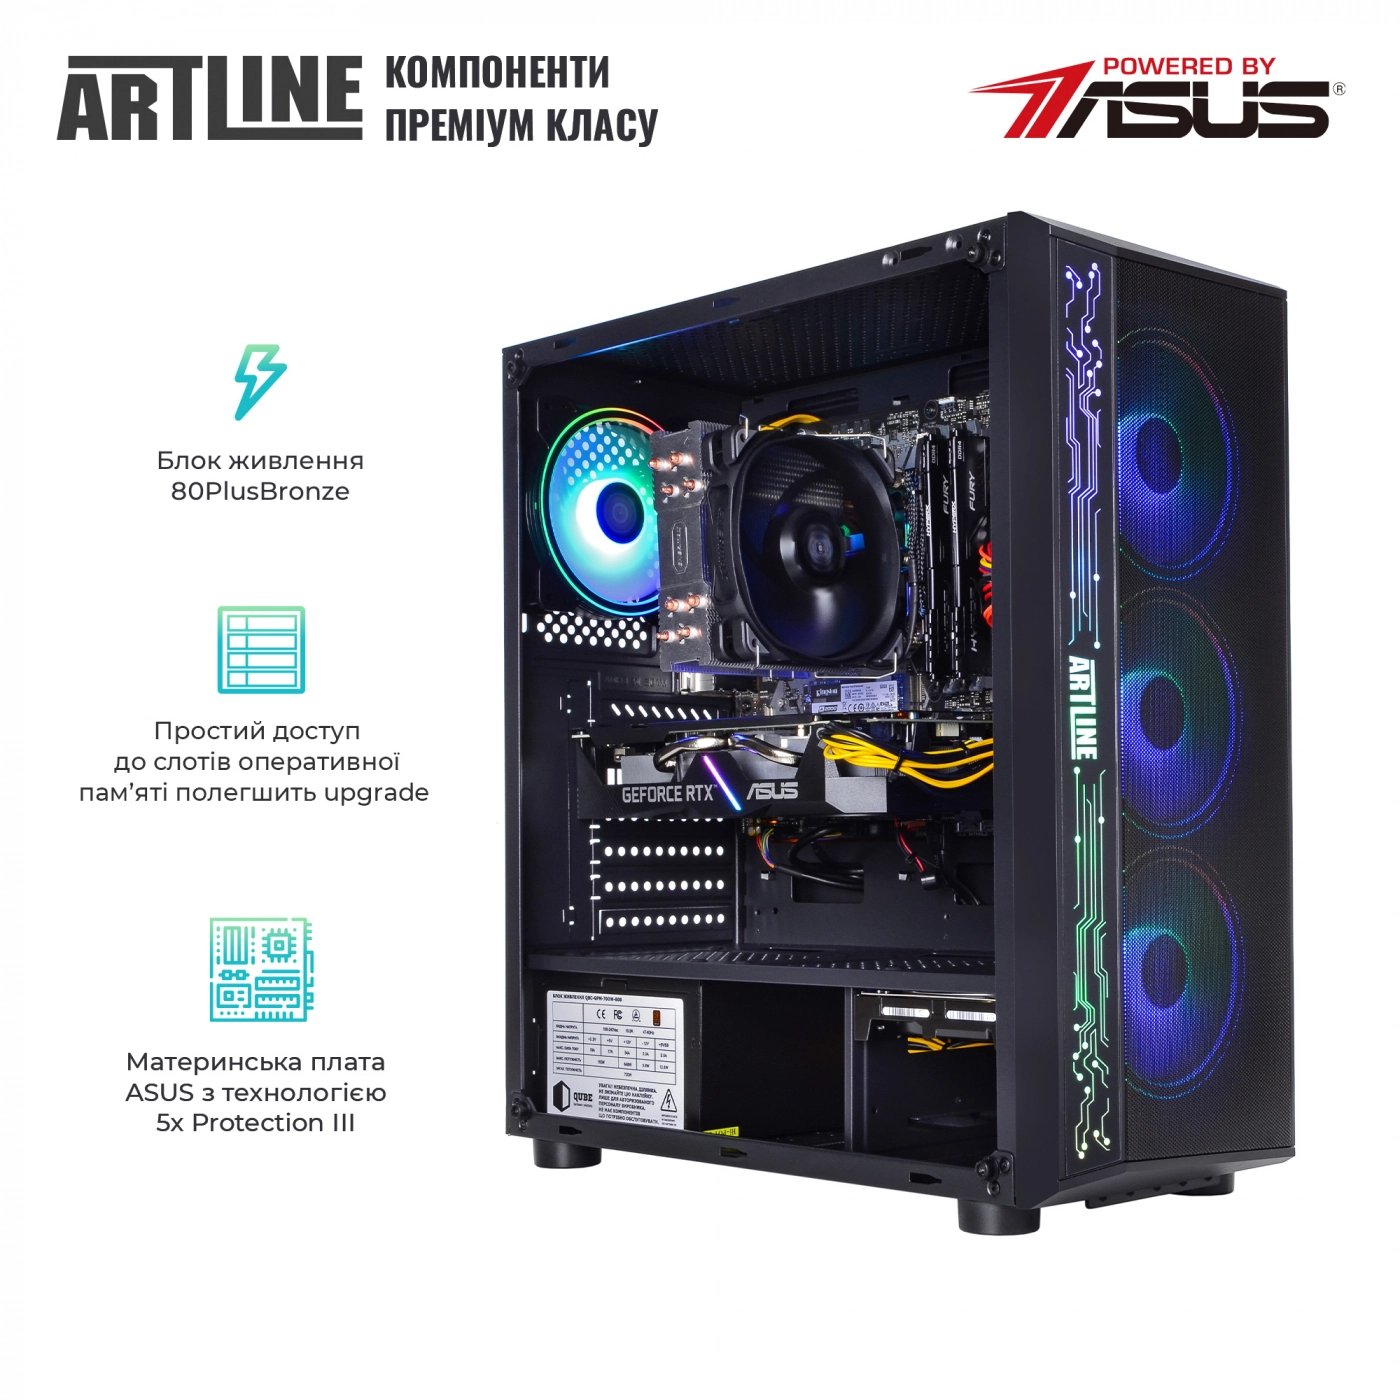 Купить Компьютер ARTLINE Gaming X57v41 - фото 2